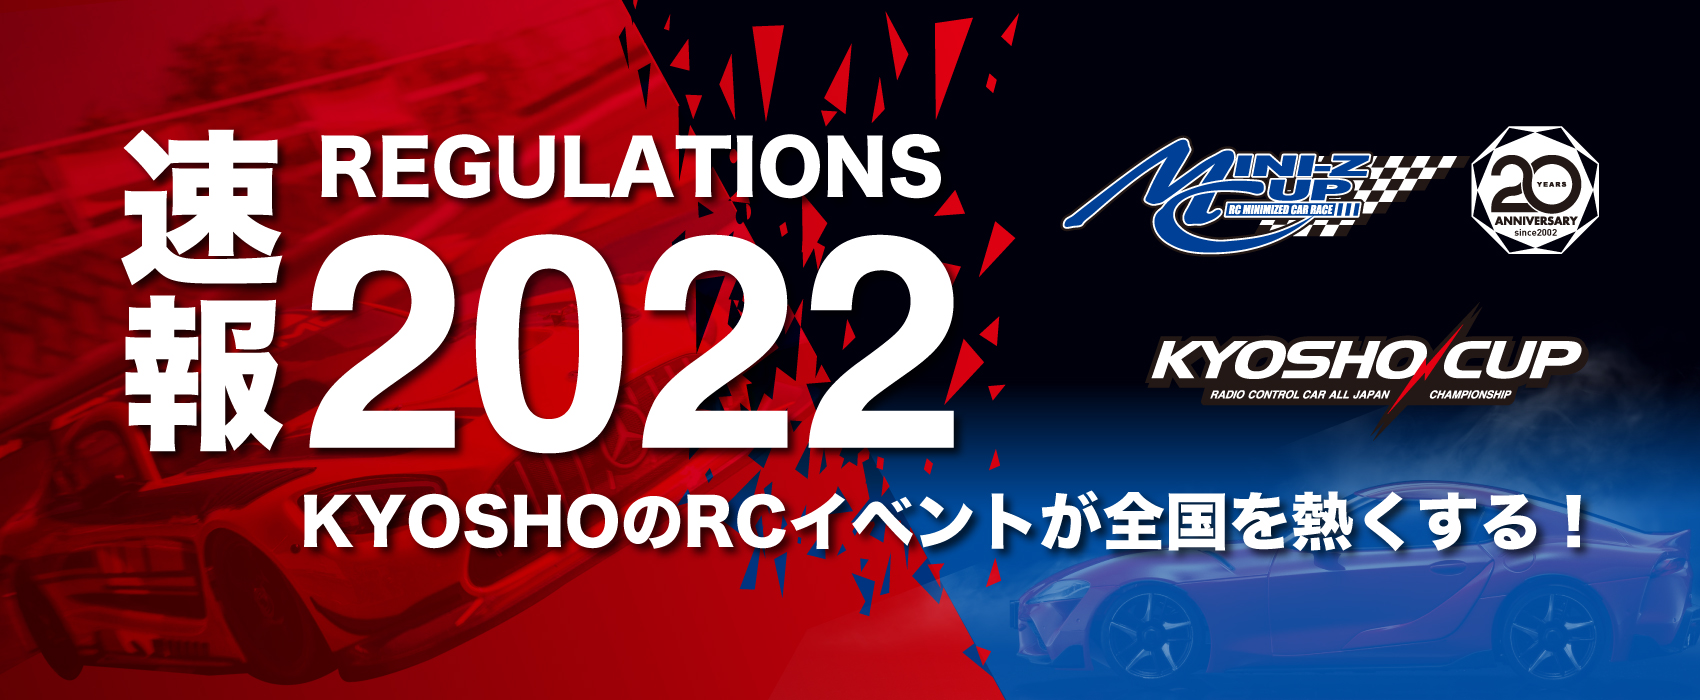 速報 2022 REGULATIONS ミニッツカップ・京商カップ - KYOSHOのRCイベントが全国を熱くする！